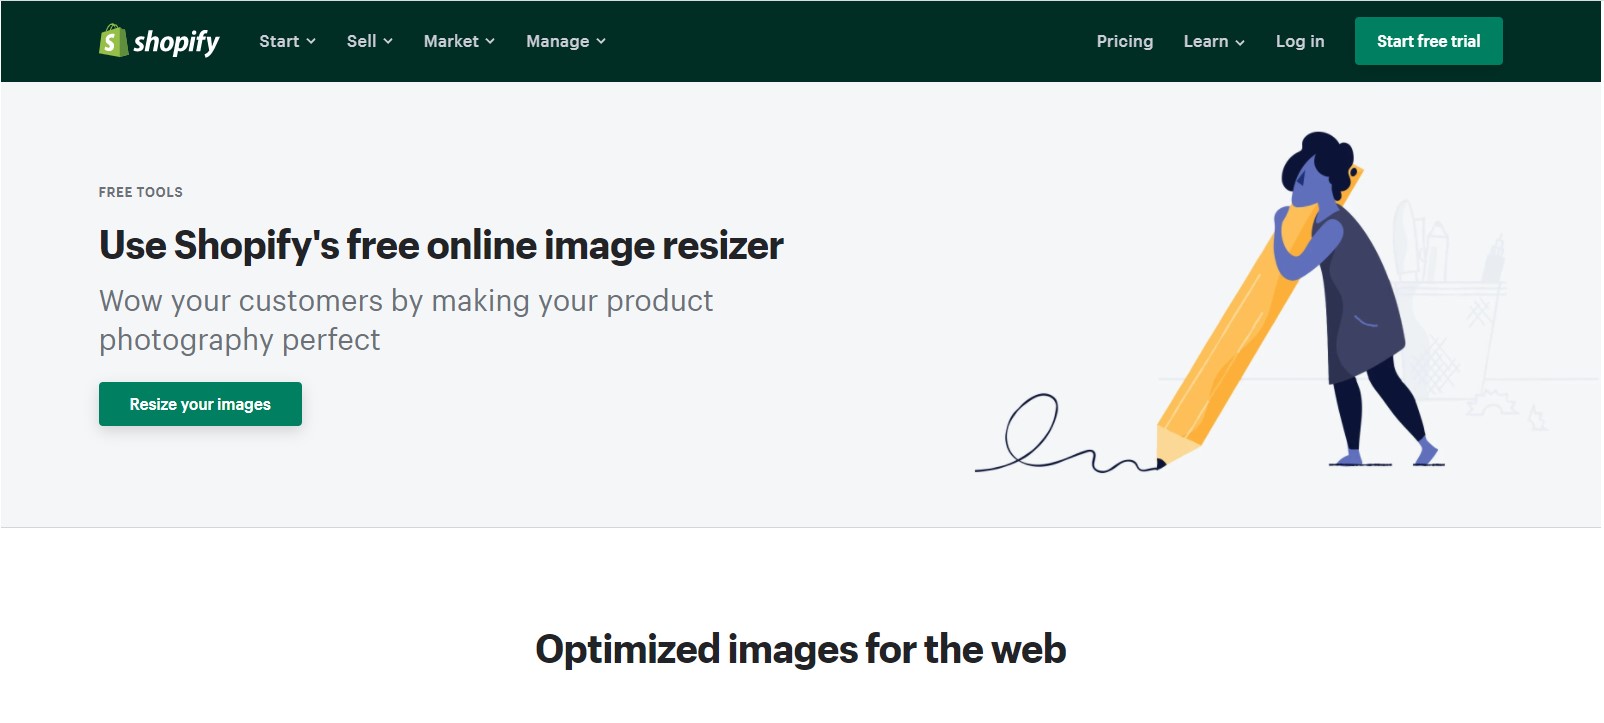 Shopify image resizer tool